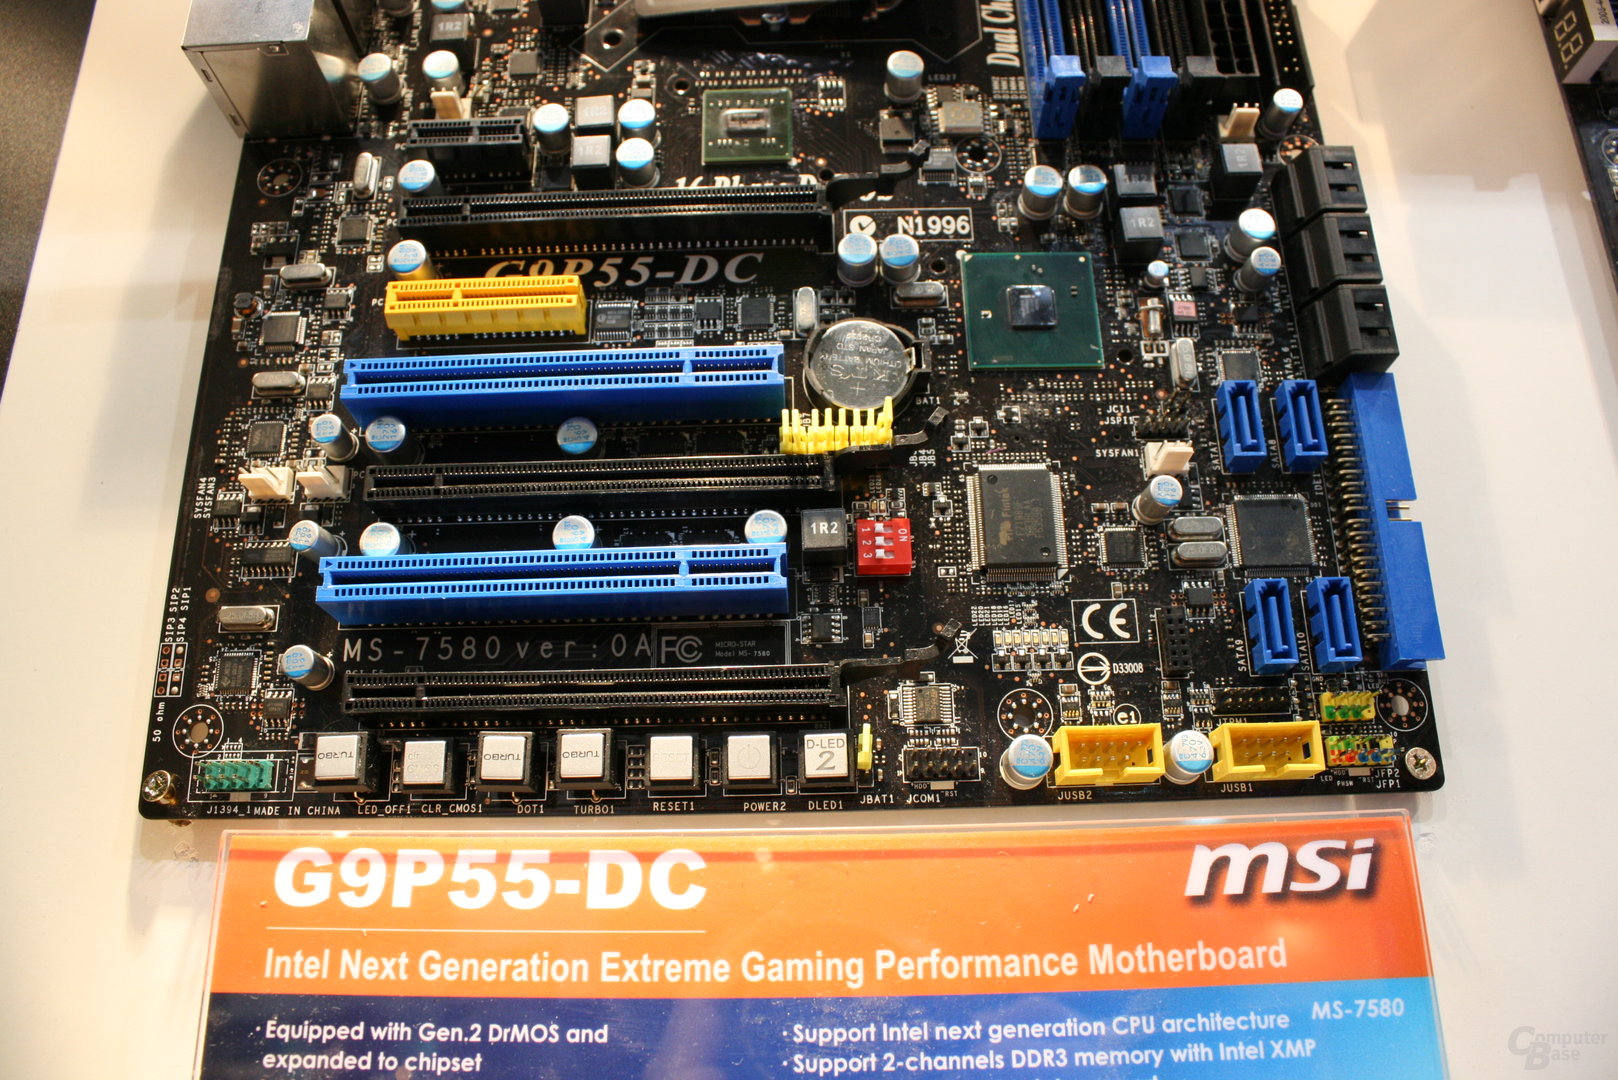 MSI G9P55-DC